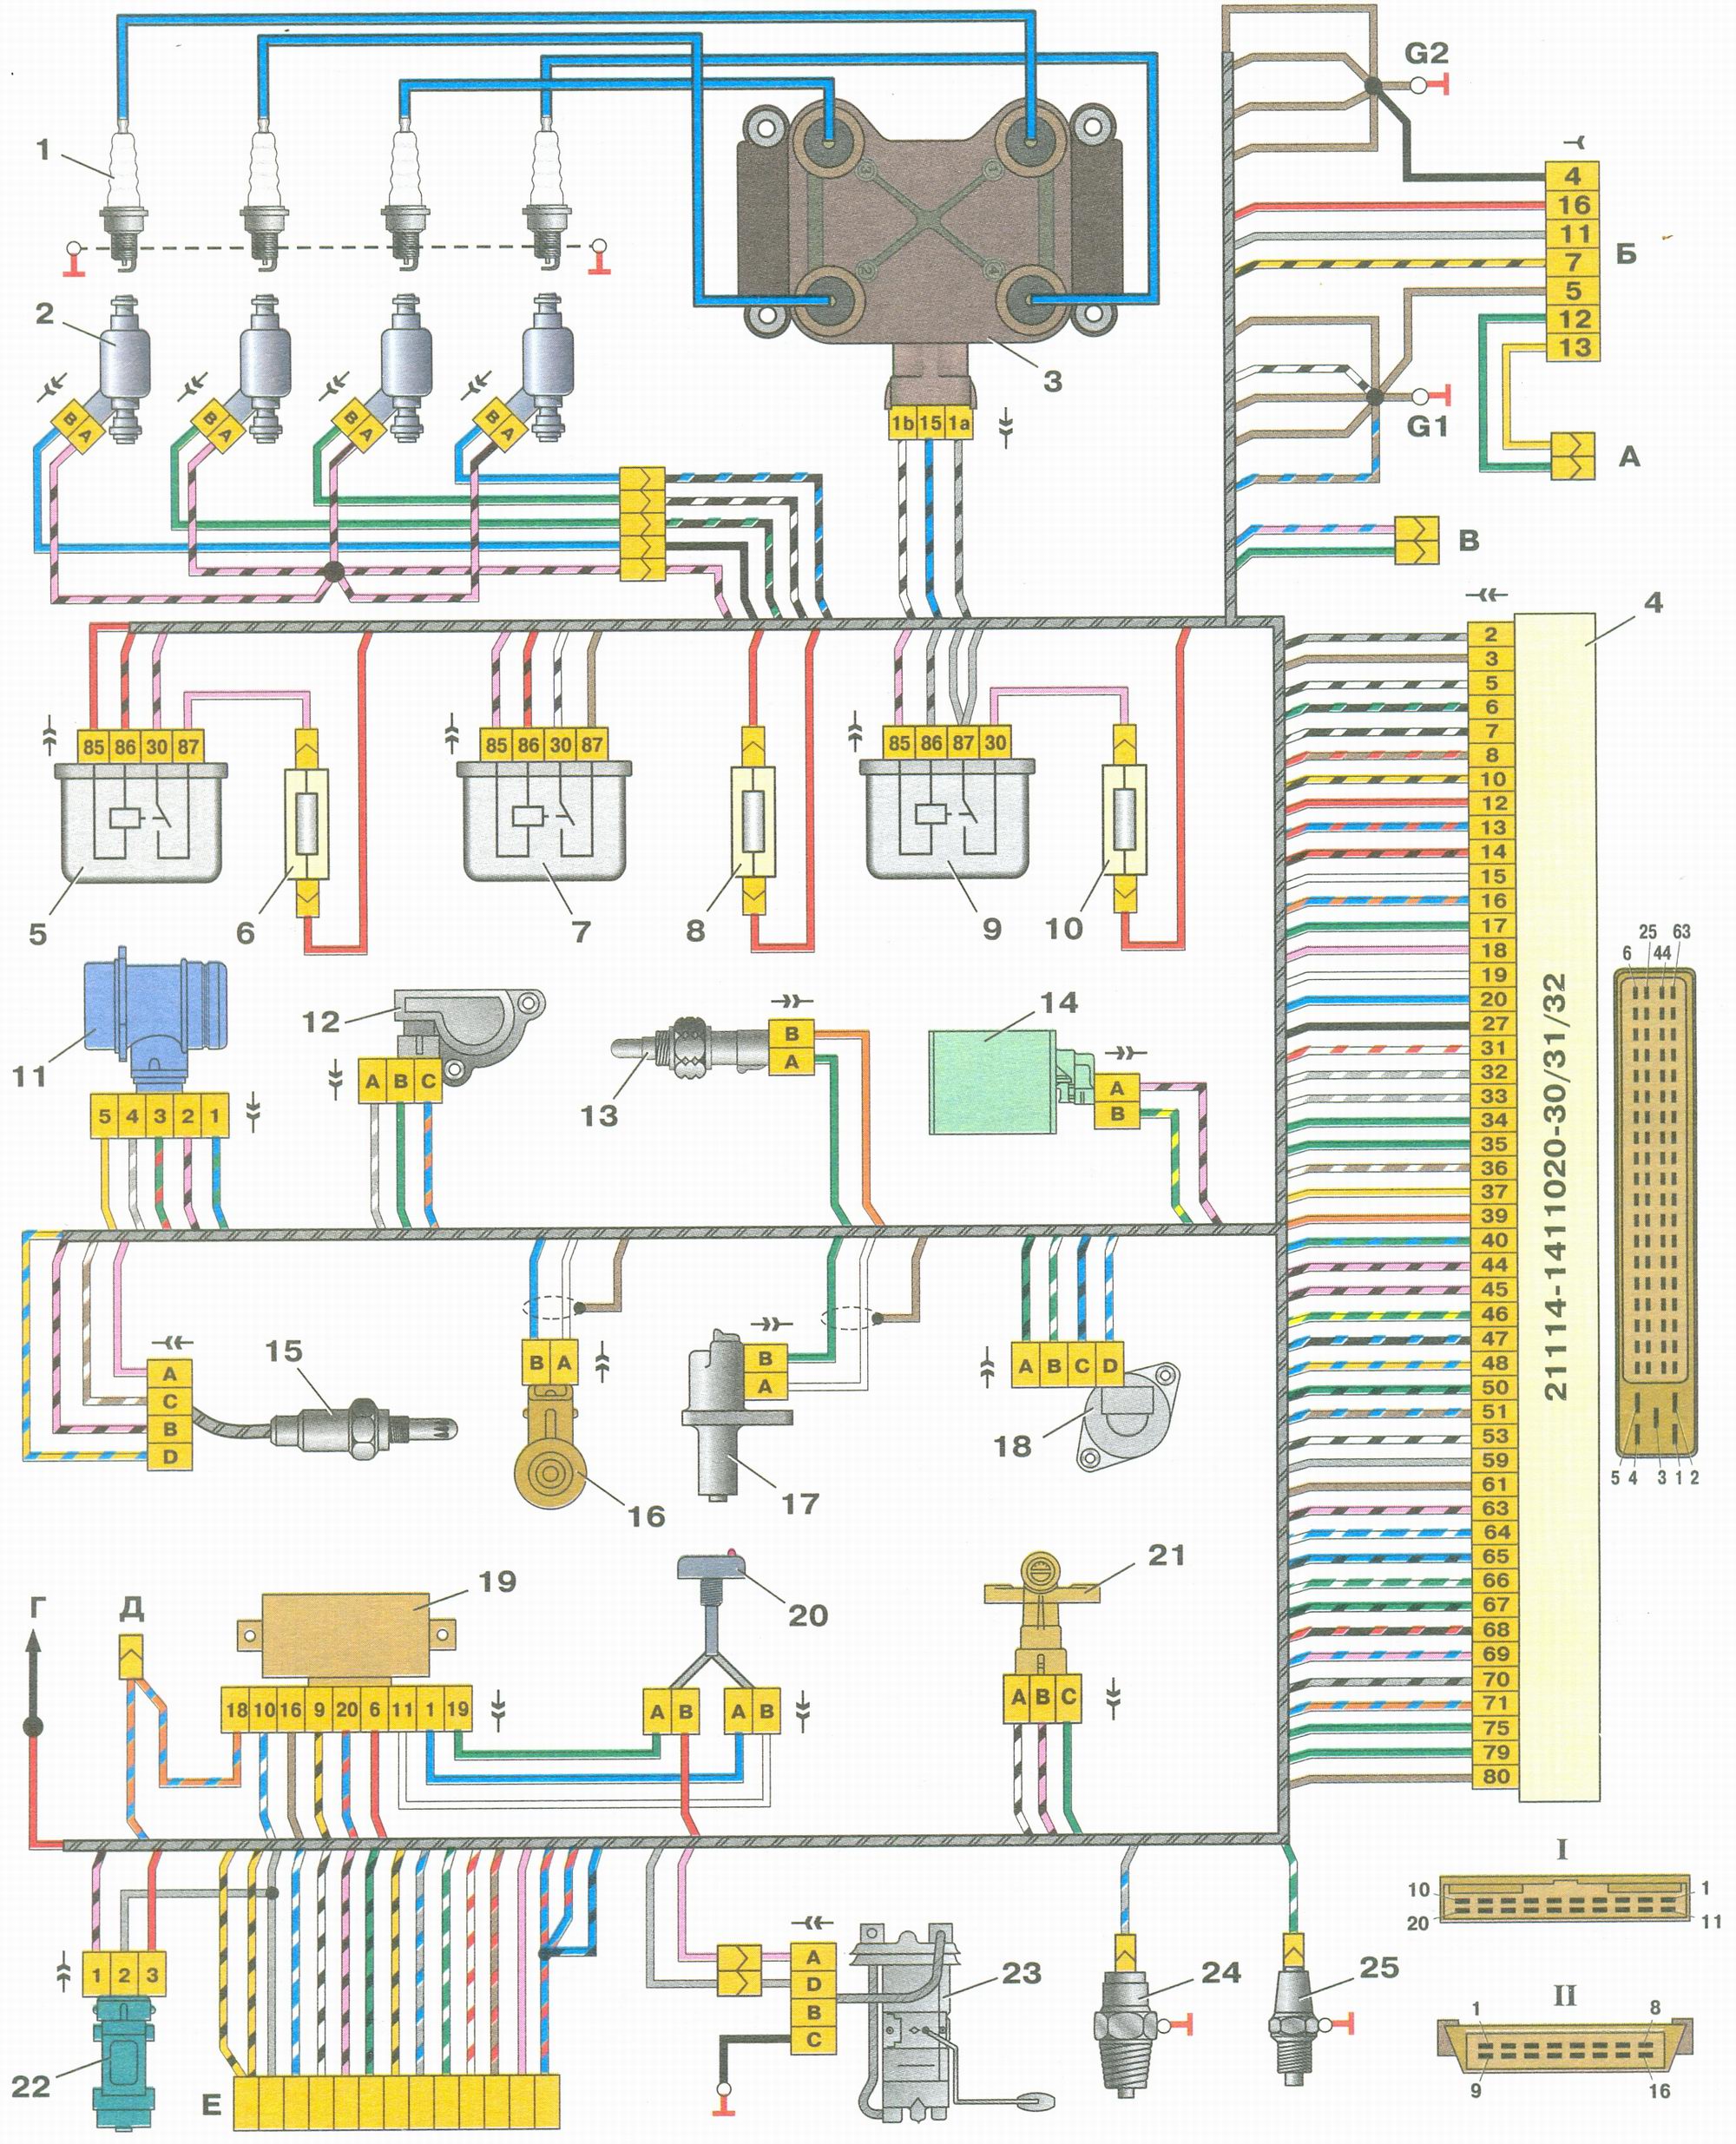 Схема соединений системы управления двигателем под нормы токсичности Евро-2 ВАЗ (Lada) Kalina 1118